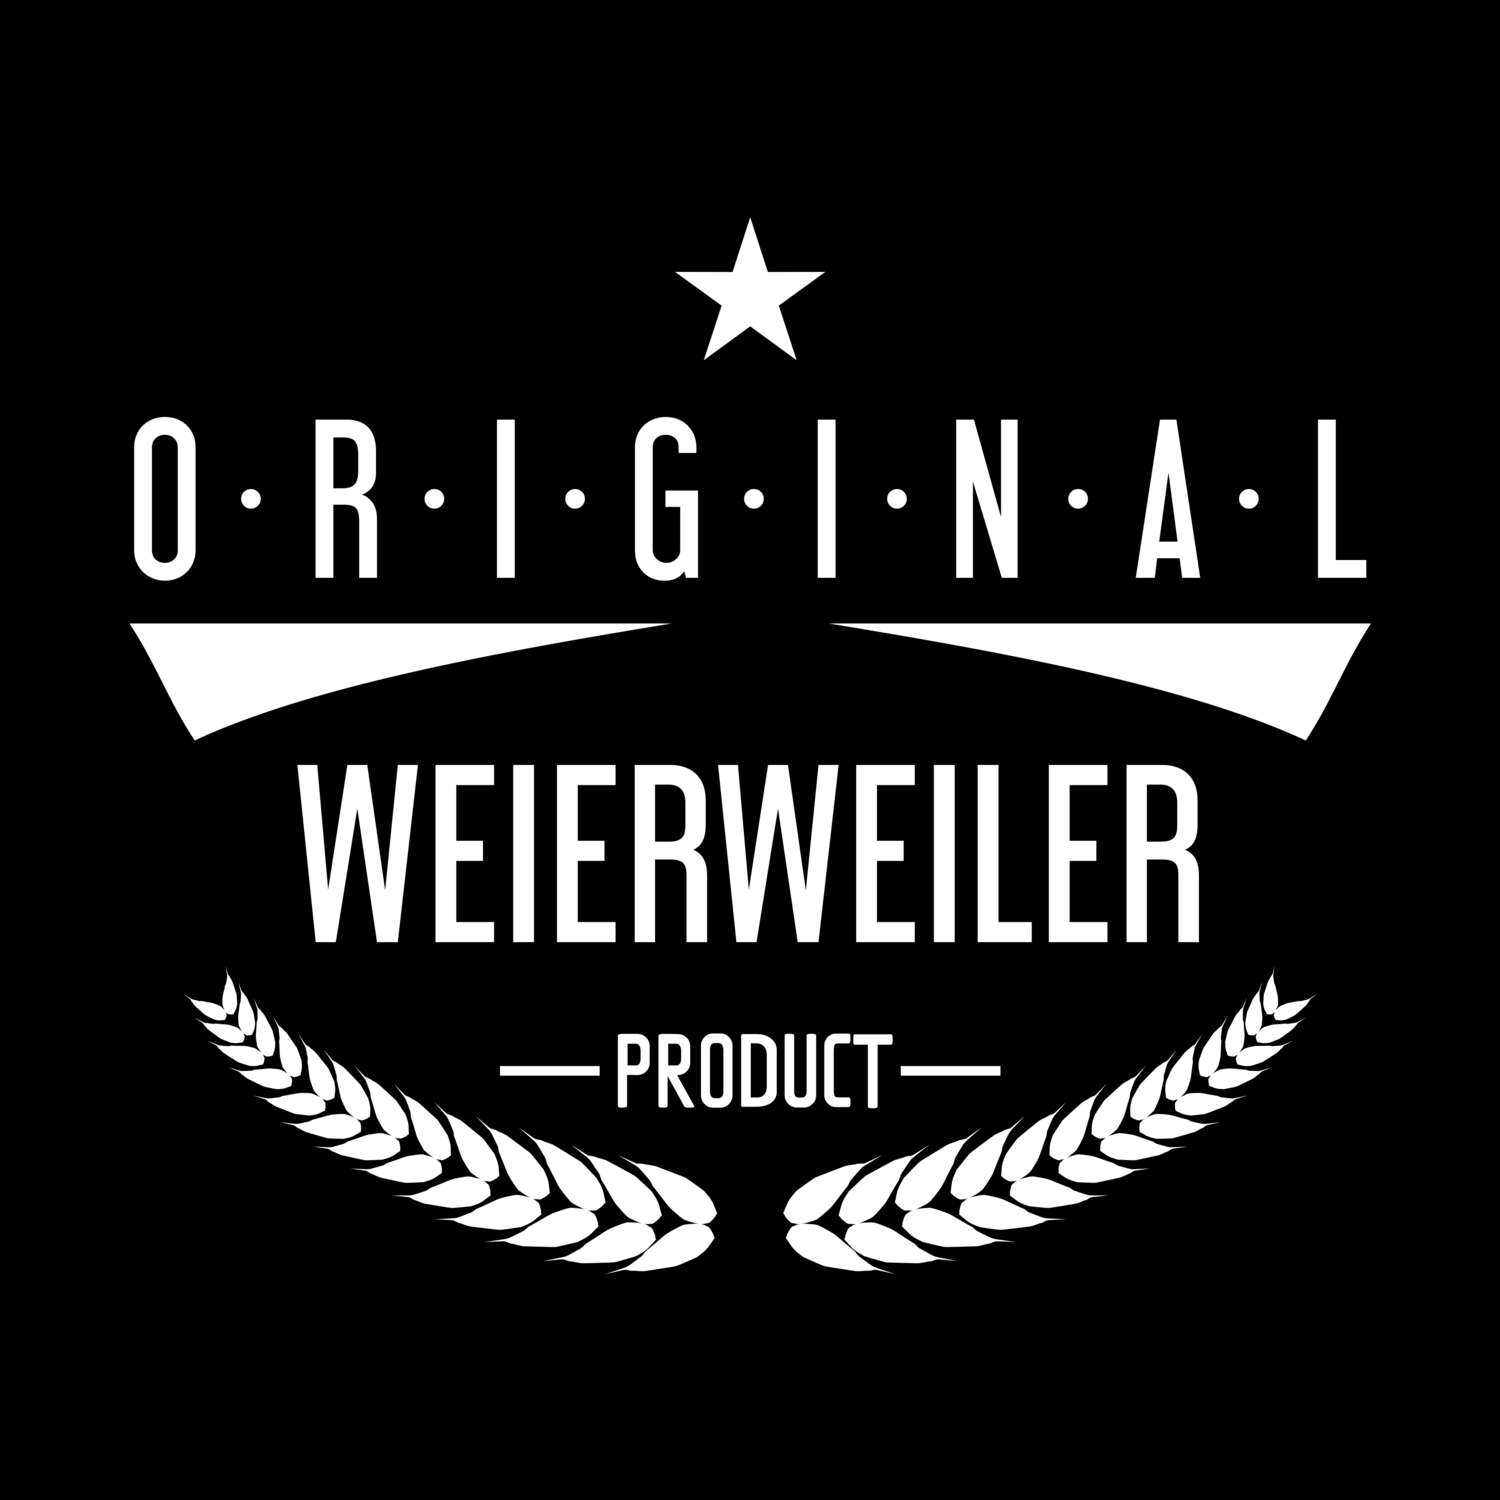 Weierweiler T-Shirt »Original Product«